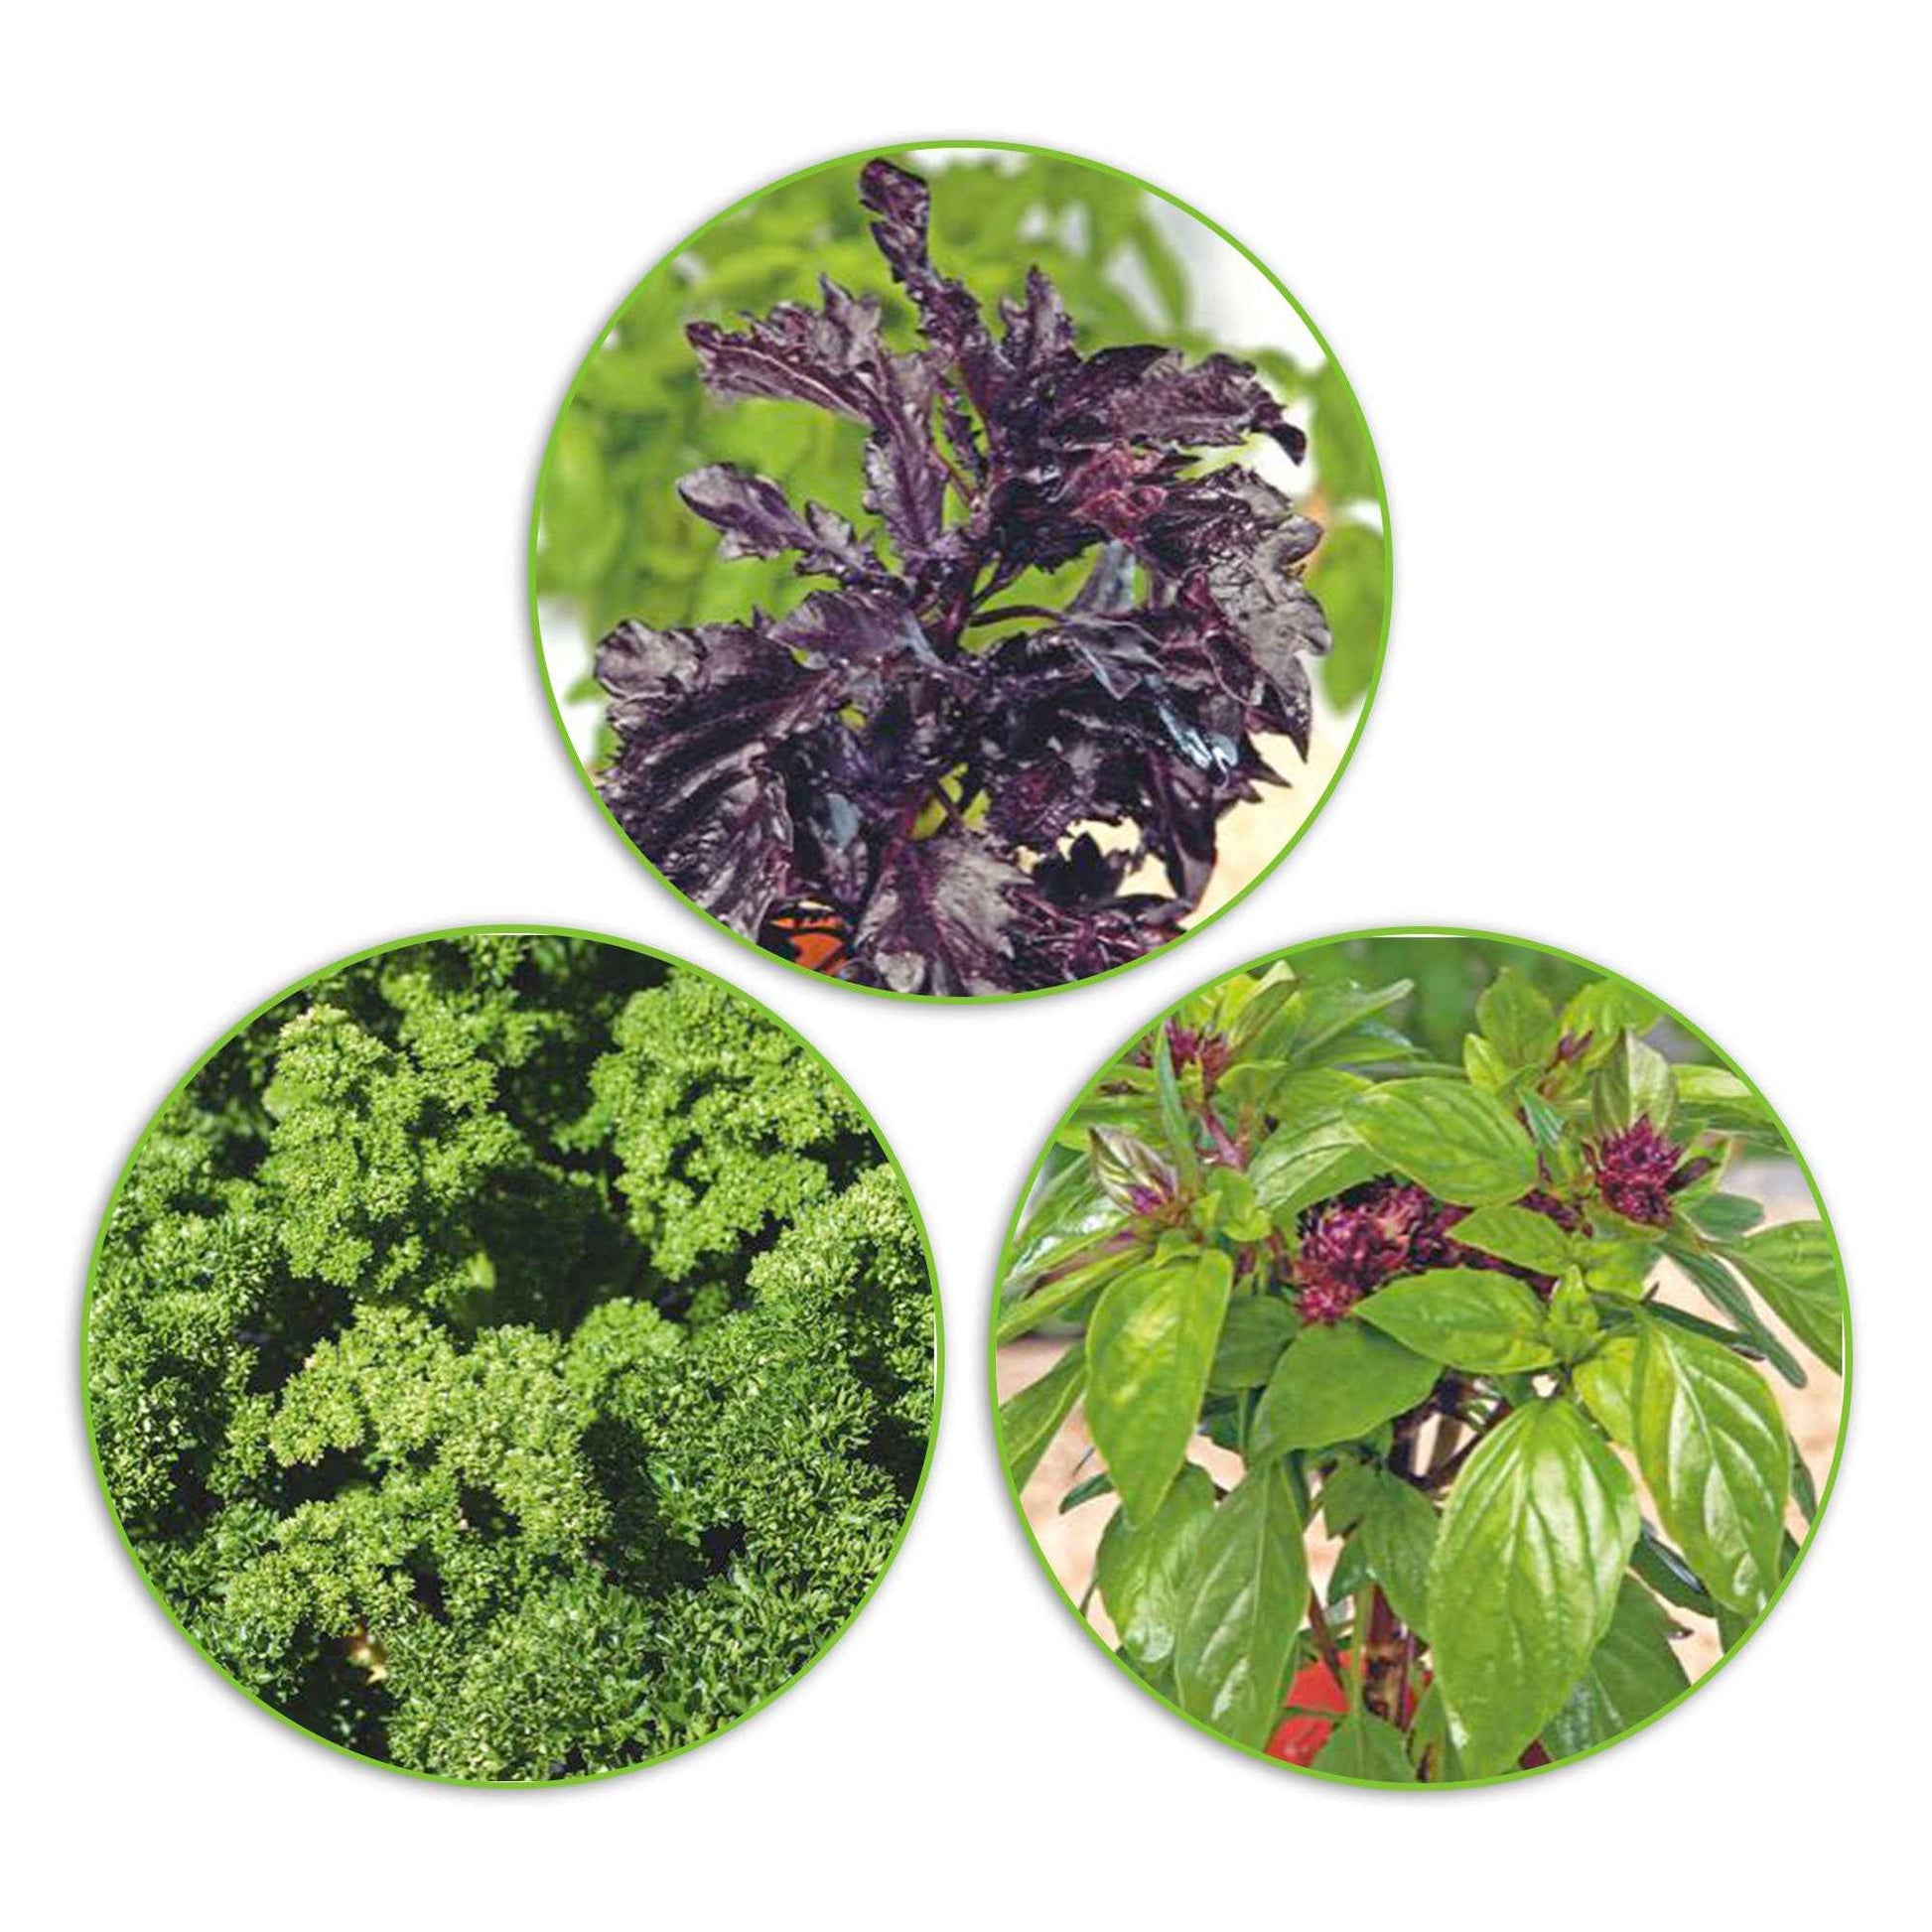 Paquet d'herbes aromatiques 'Plantes succulentes' - Semences d’herbes - Graines